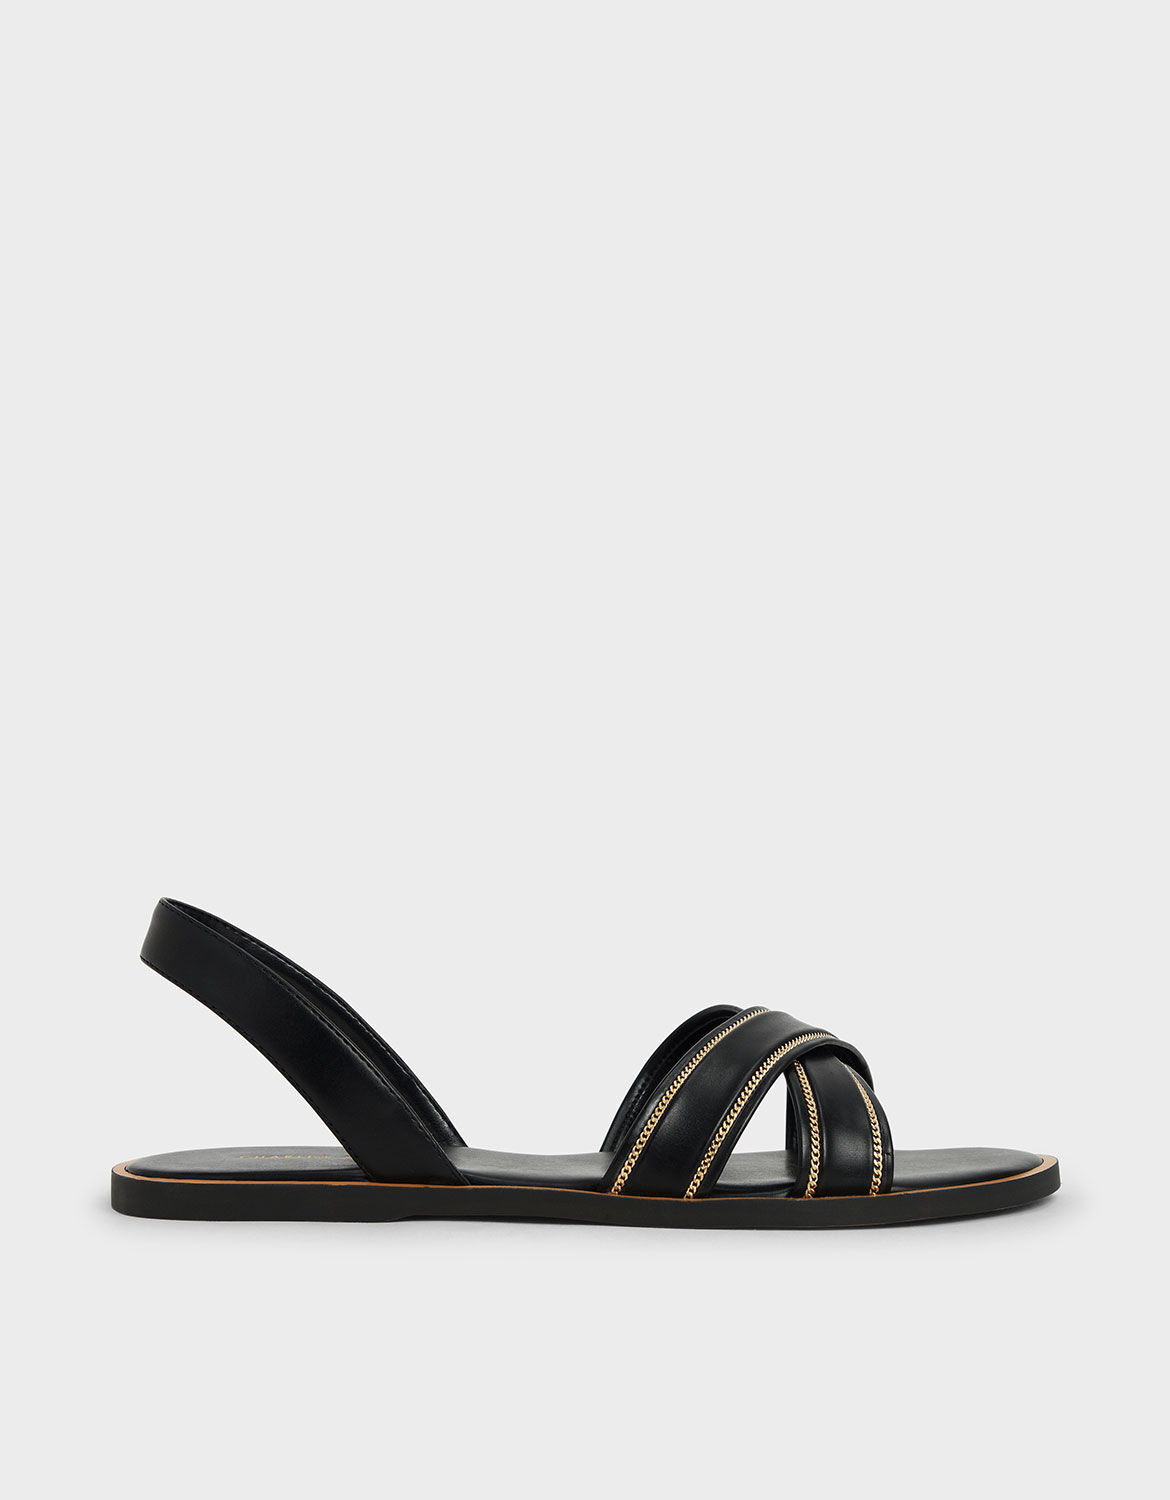 black embellished sandals